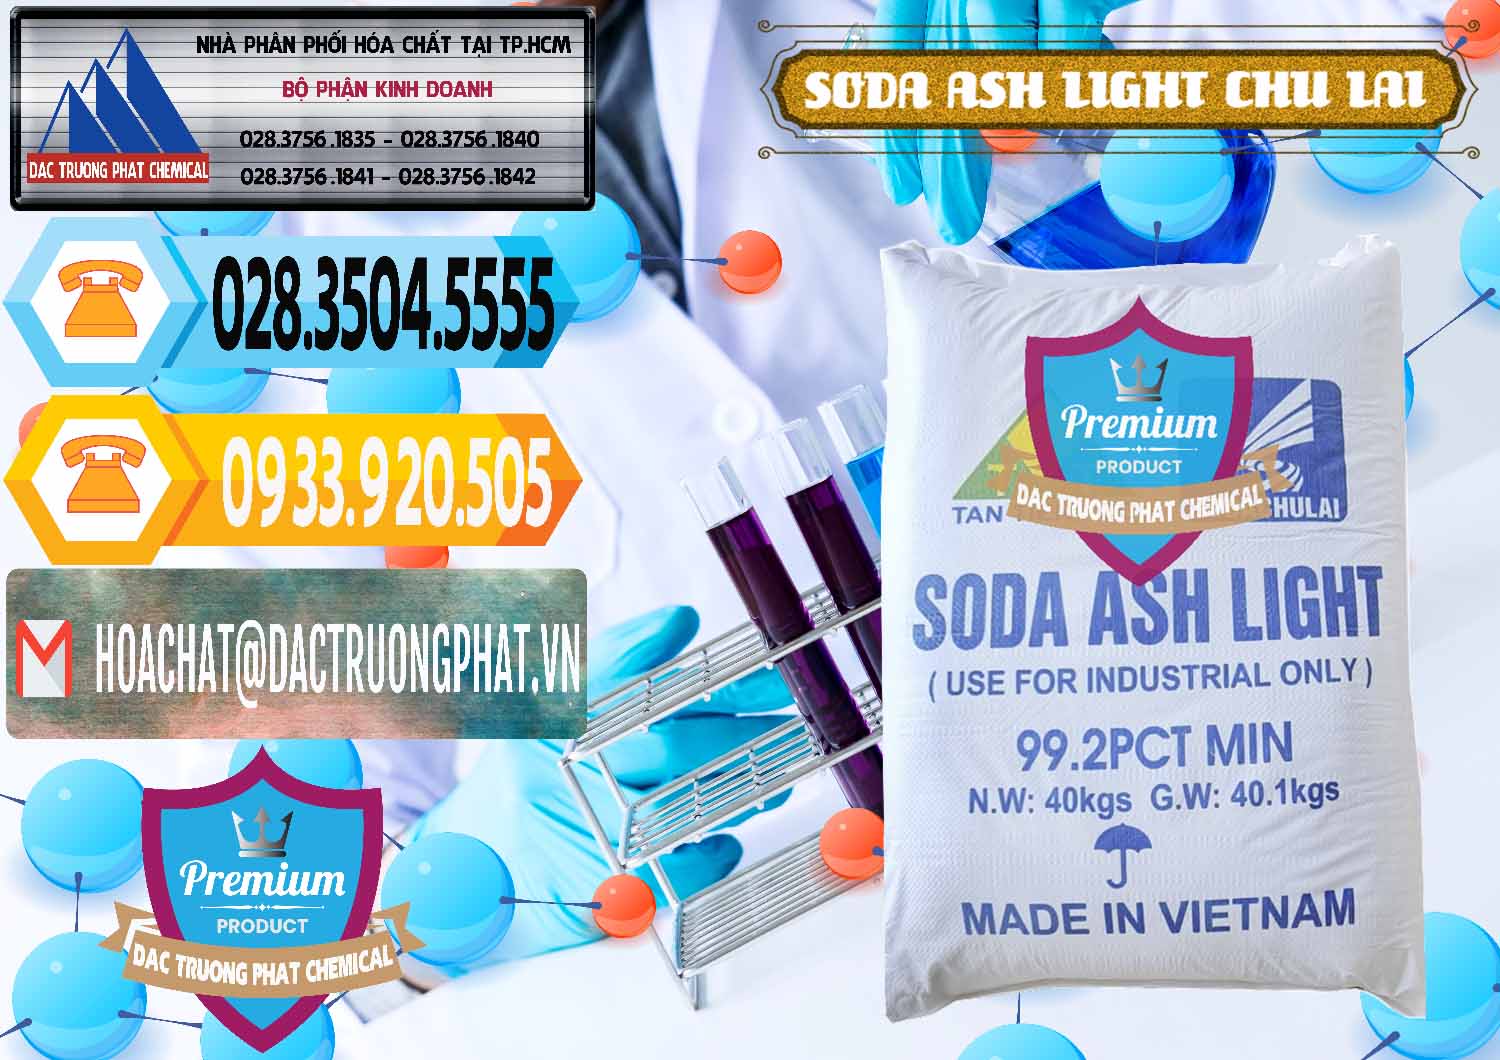 Công ty chuyên kinh doanh & bán Soda Ash Light - NA2CO3 Chu Lai Việt Nam - 0489 - Cty bán & phân phối hóa chất tại TP.HCM - hoachattayrua.net